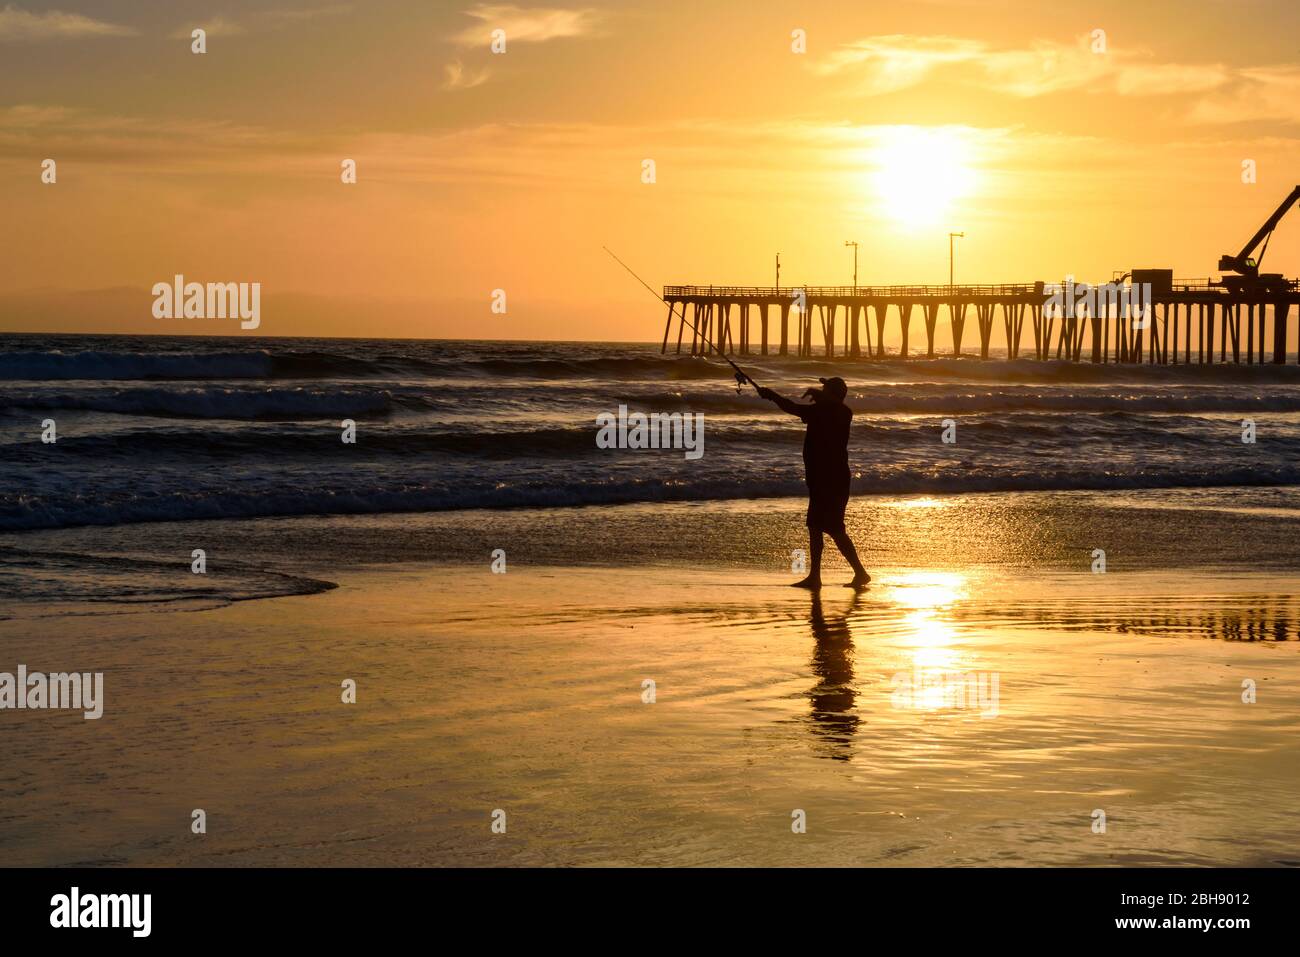 Angler am Strand von Santa Cruz an der Westküste Kaliforniens mit Pier im Hintergrund, Silhouette, Sonnenuntergang Stock Photo